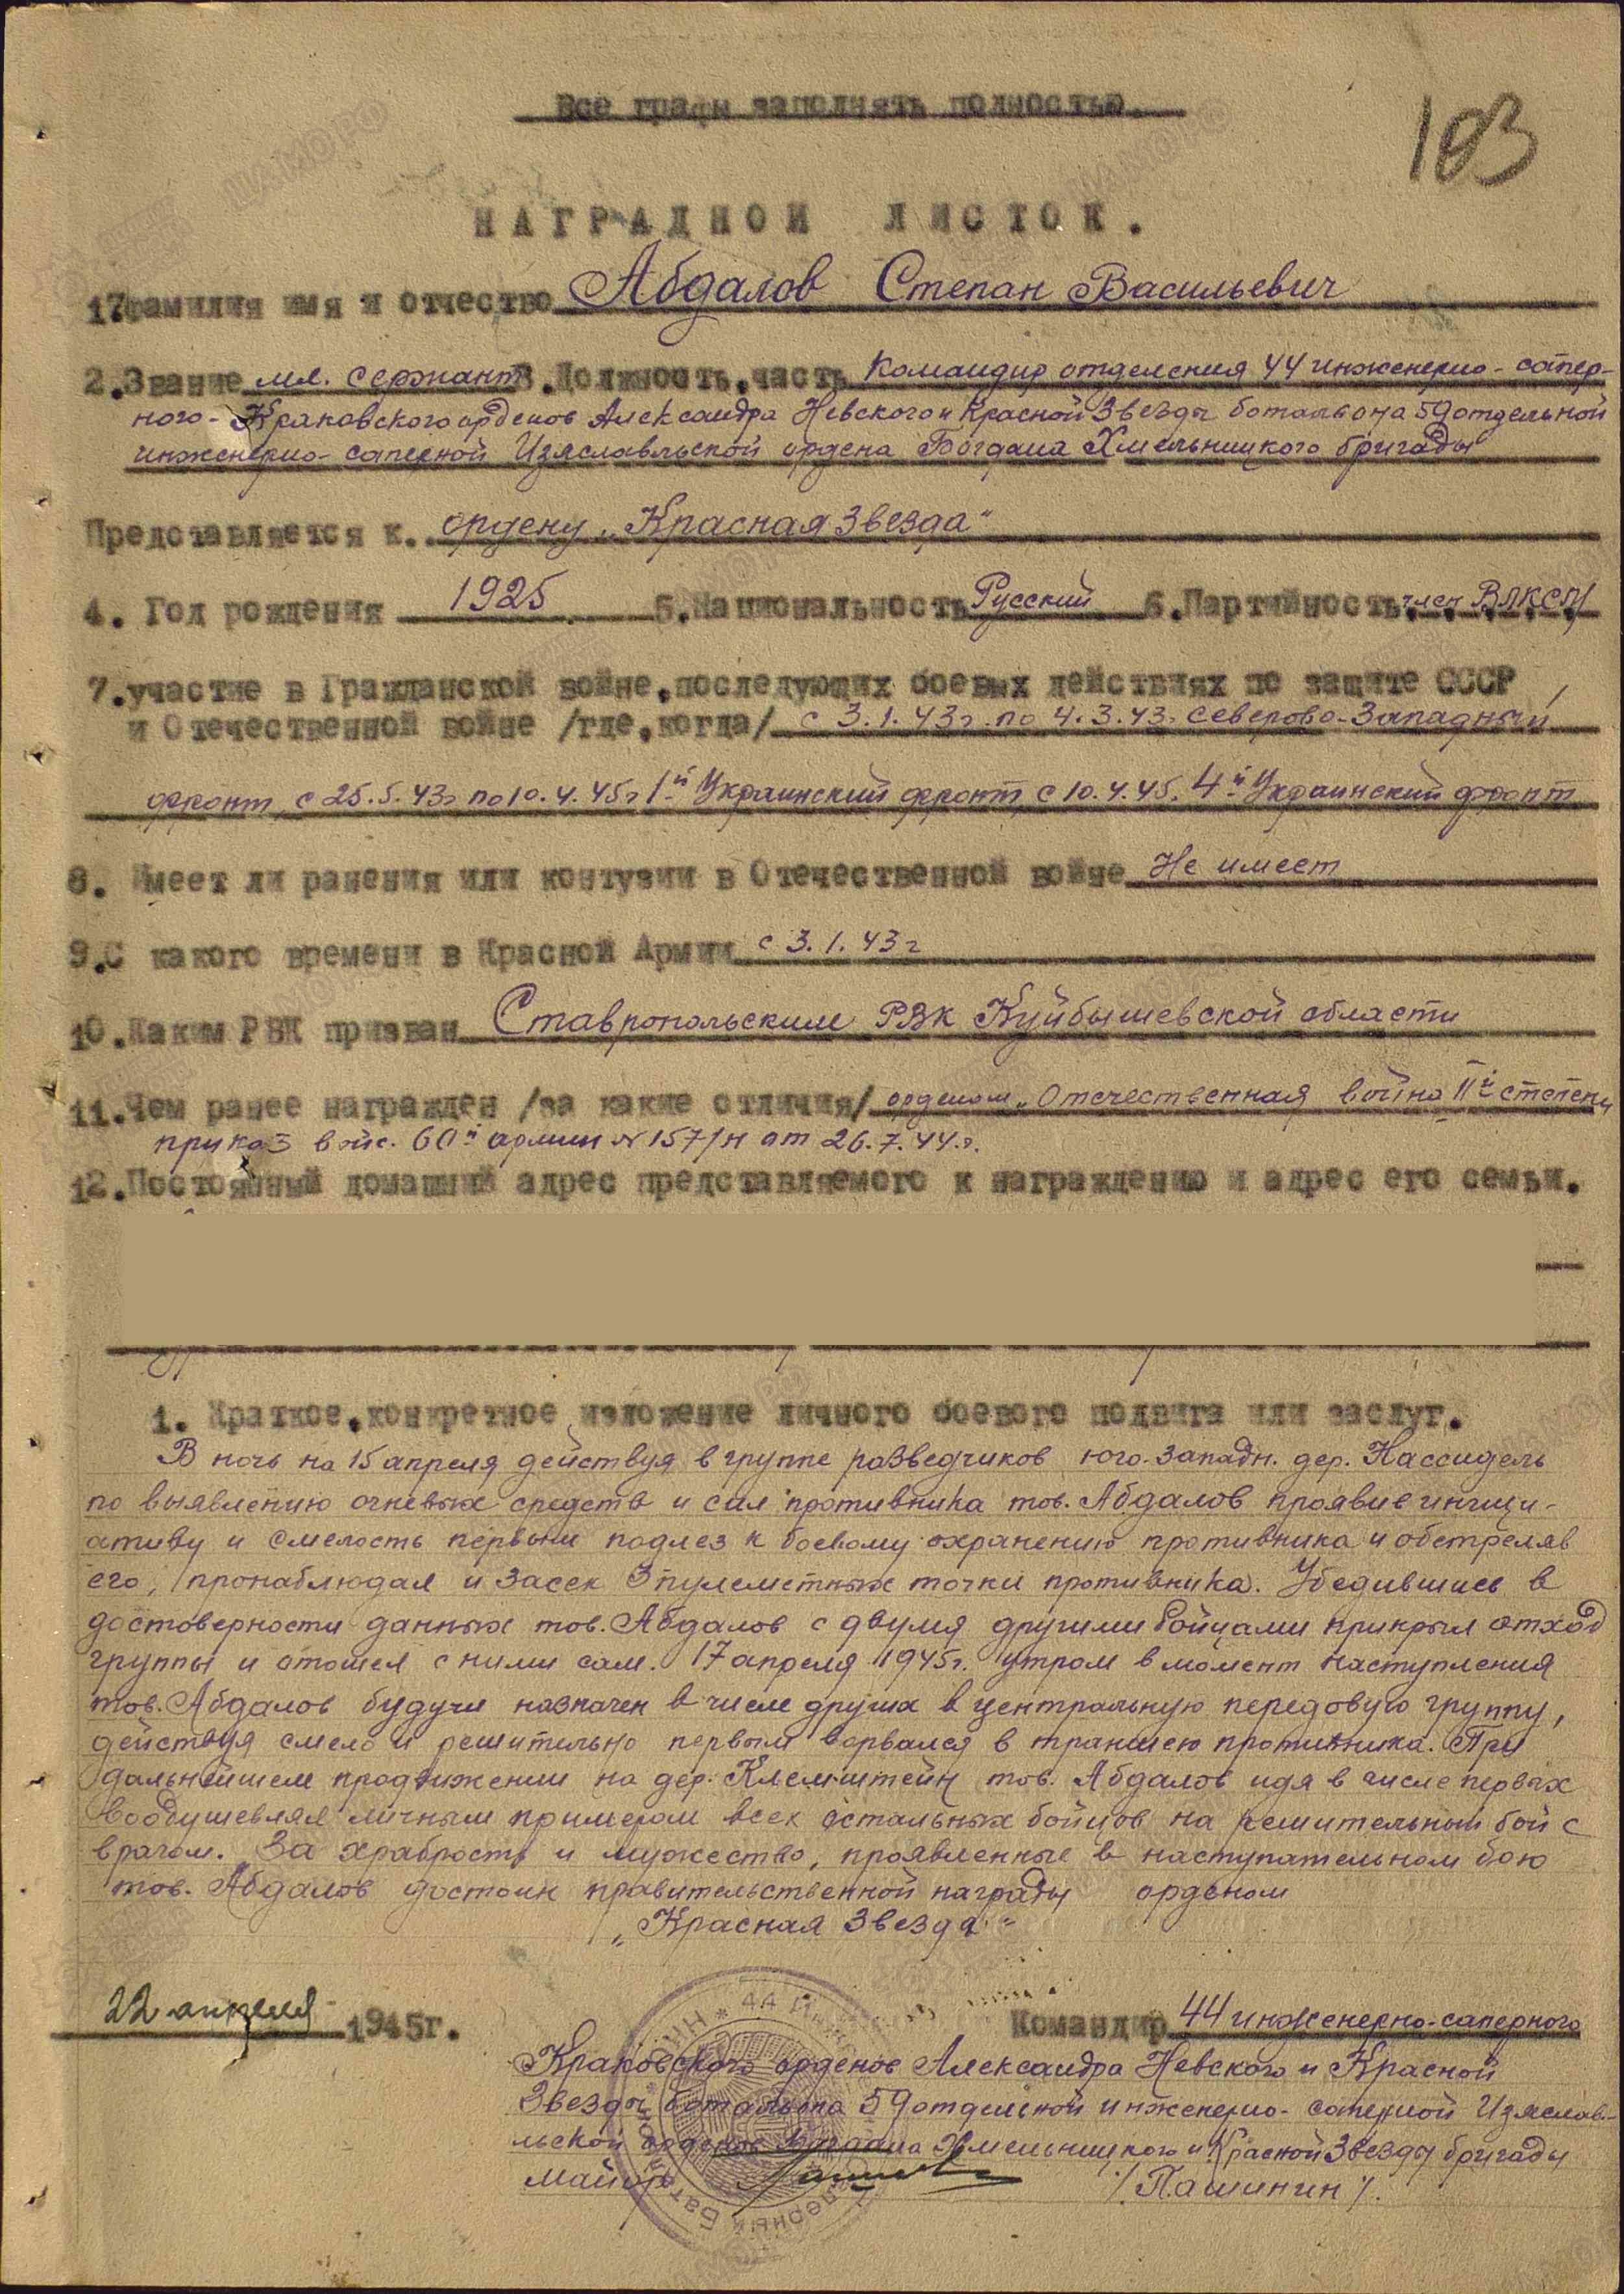 Абдалов С.В. Наградной лист от 22.04.1945 г., орден Красной Звезды (архивная копия)